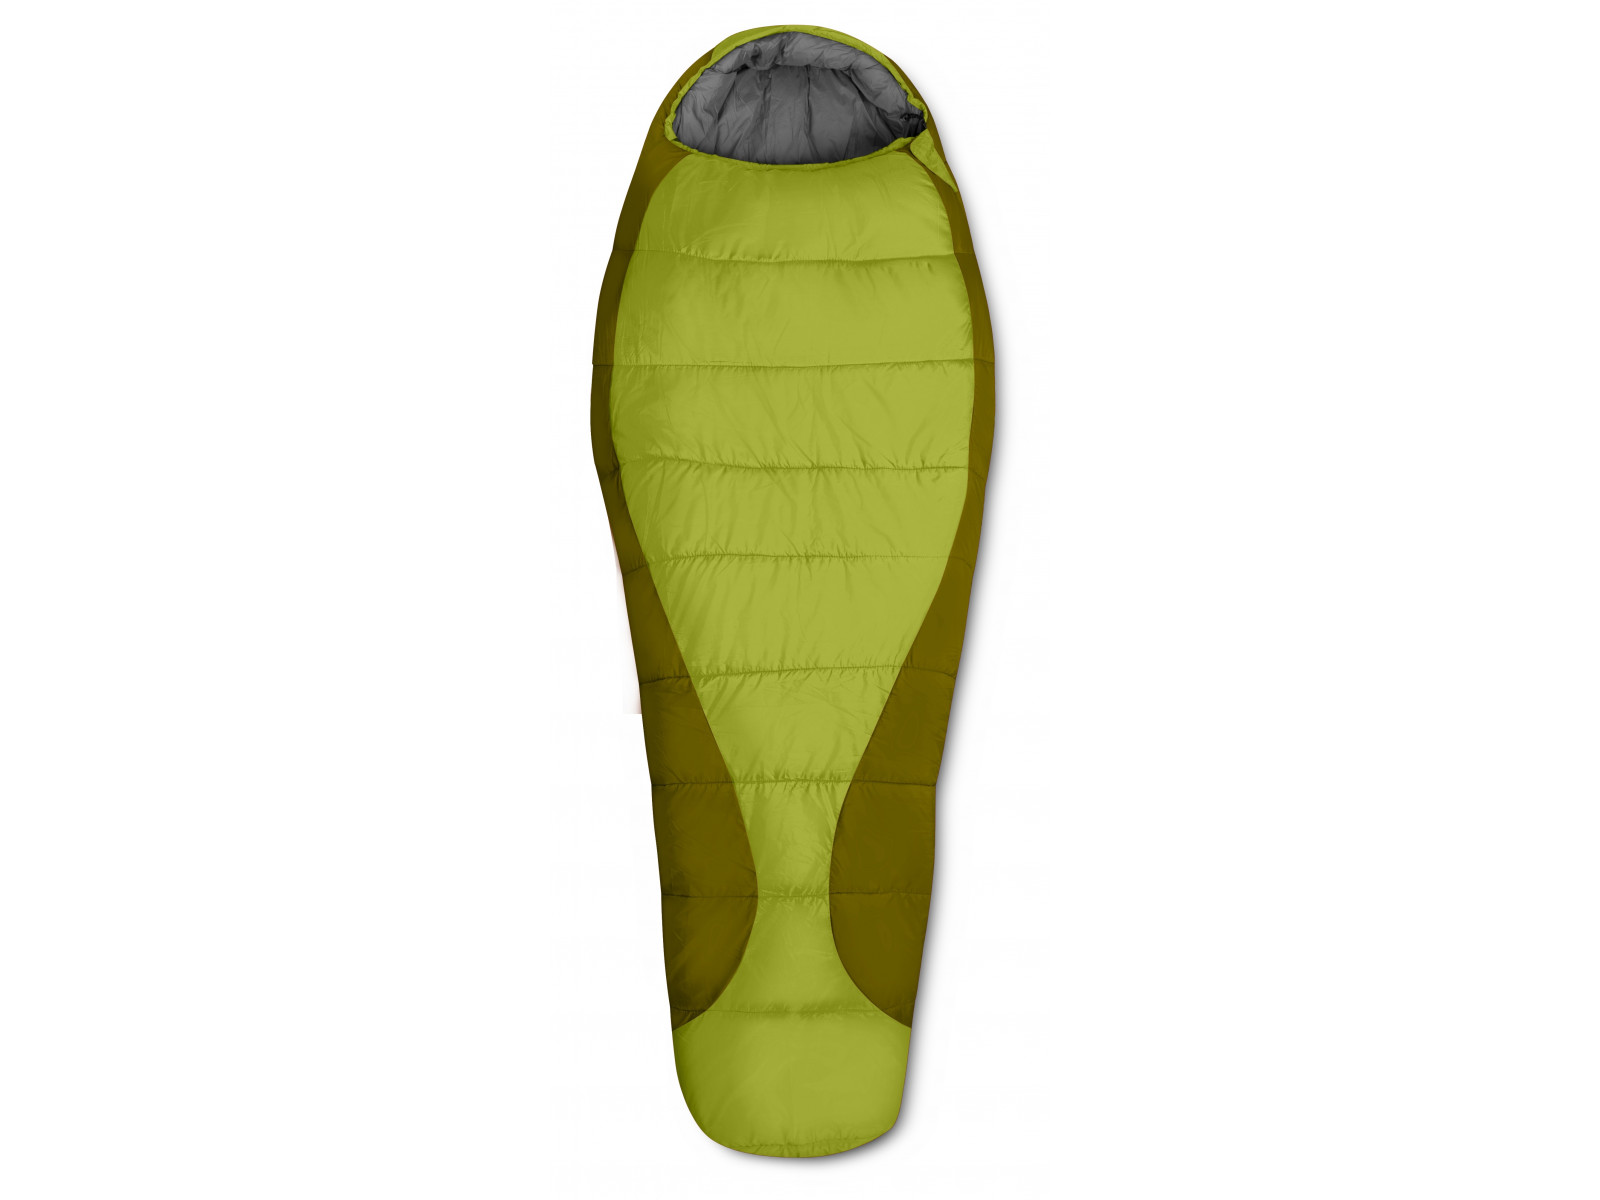 Toll Subtropical wood sleeping bag GANT kiwi green/mid.green